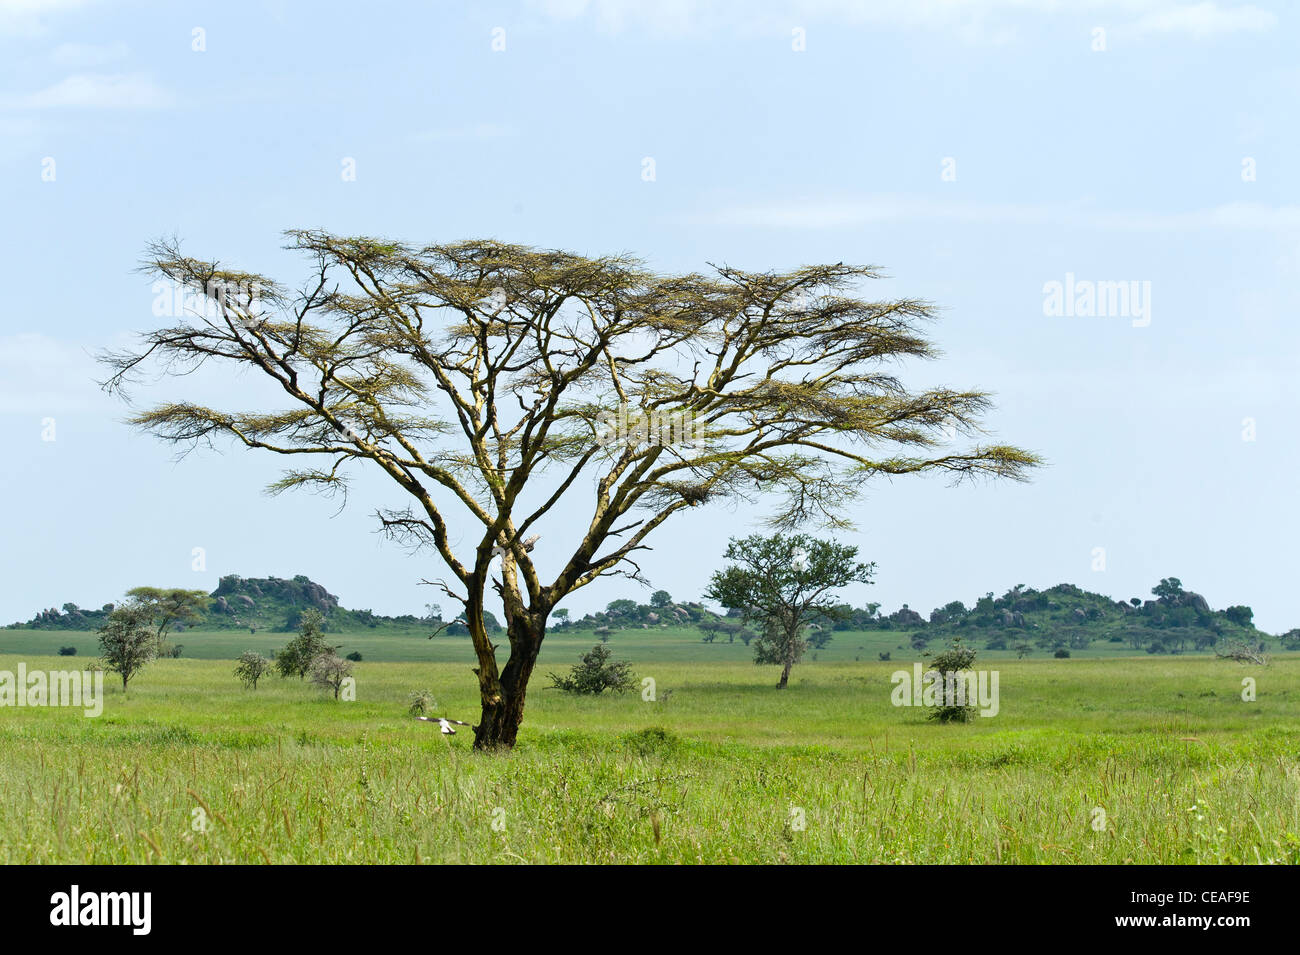 Serengeti paysage avec arbres à écorce jaune Acacia (Acacia xanthophloea), Tanzanie Banque D'Images